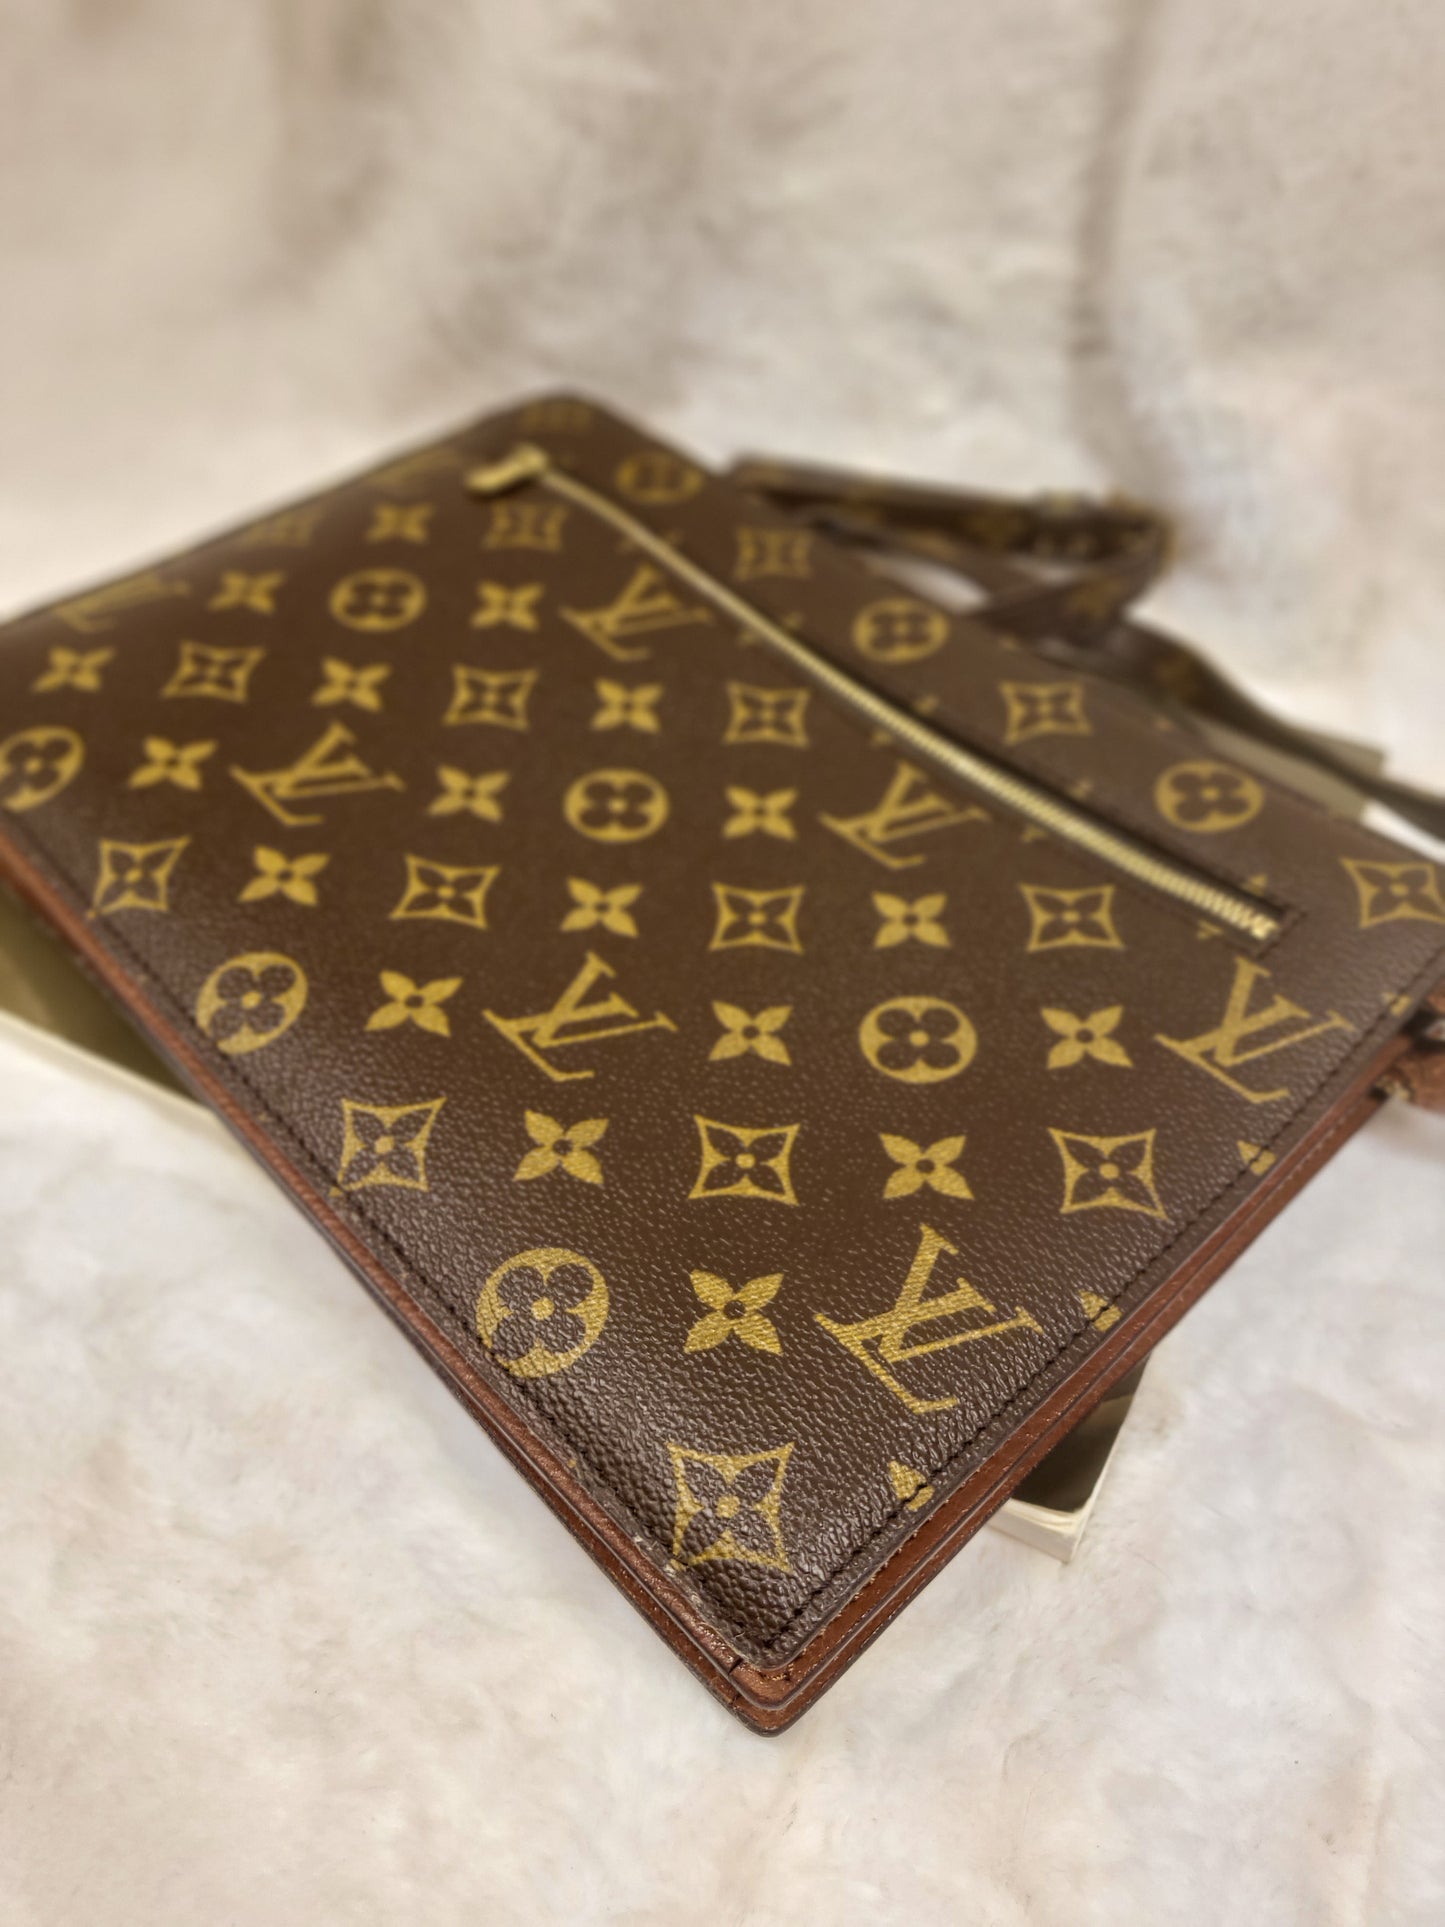 Authentic pre-owned Louis Vuitton Enghien monogram crossbody shoulder bag